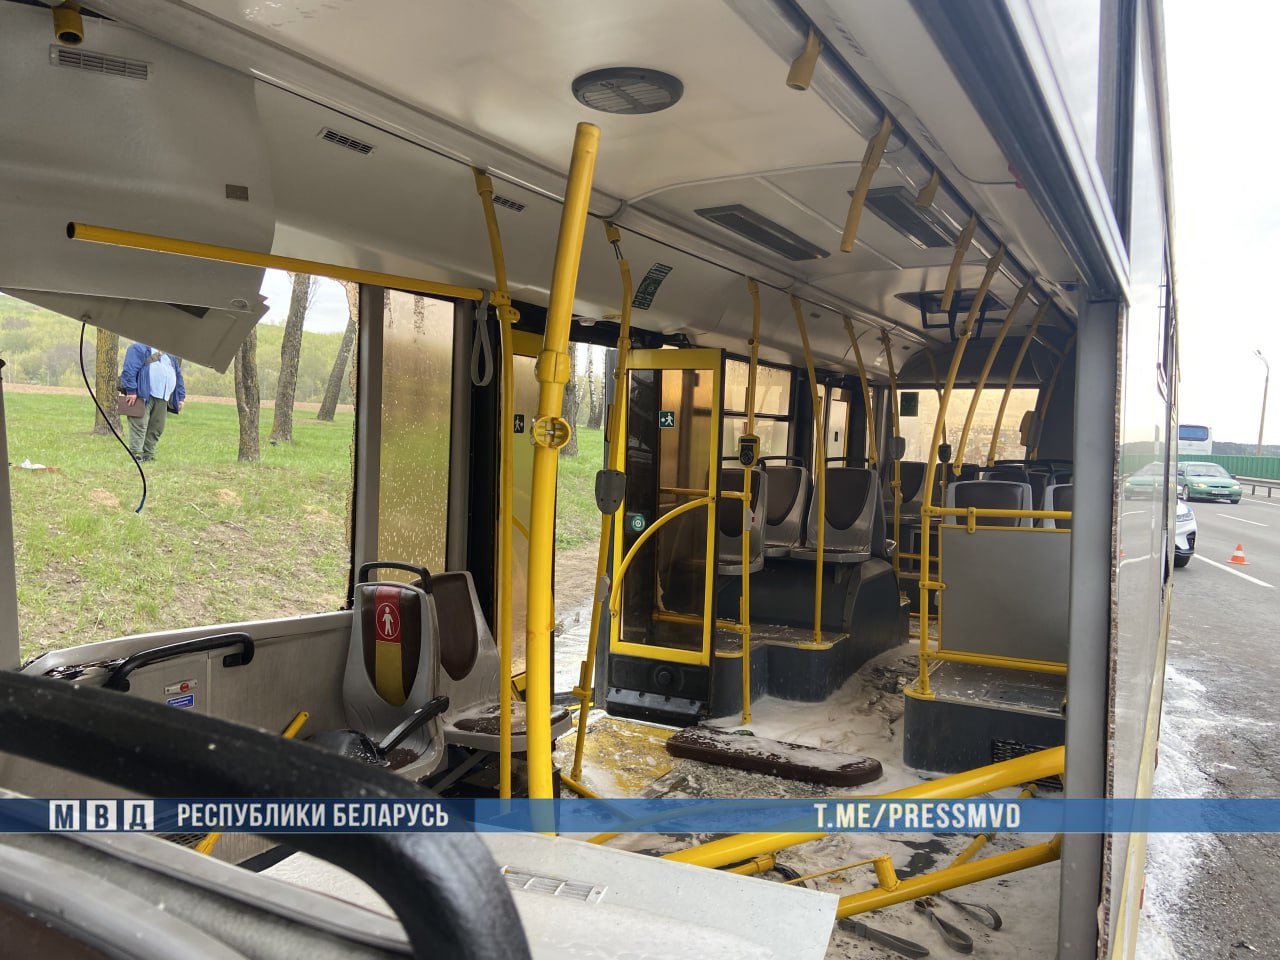 Автобус и фура столкнулись под Минском. Пострадали 14 человек